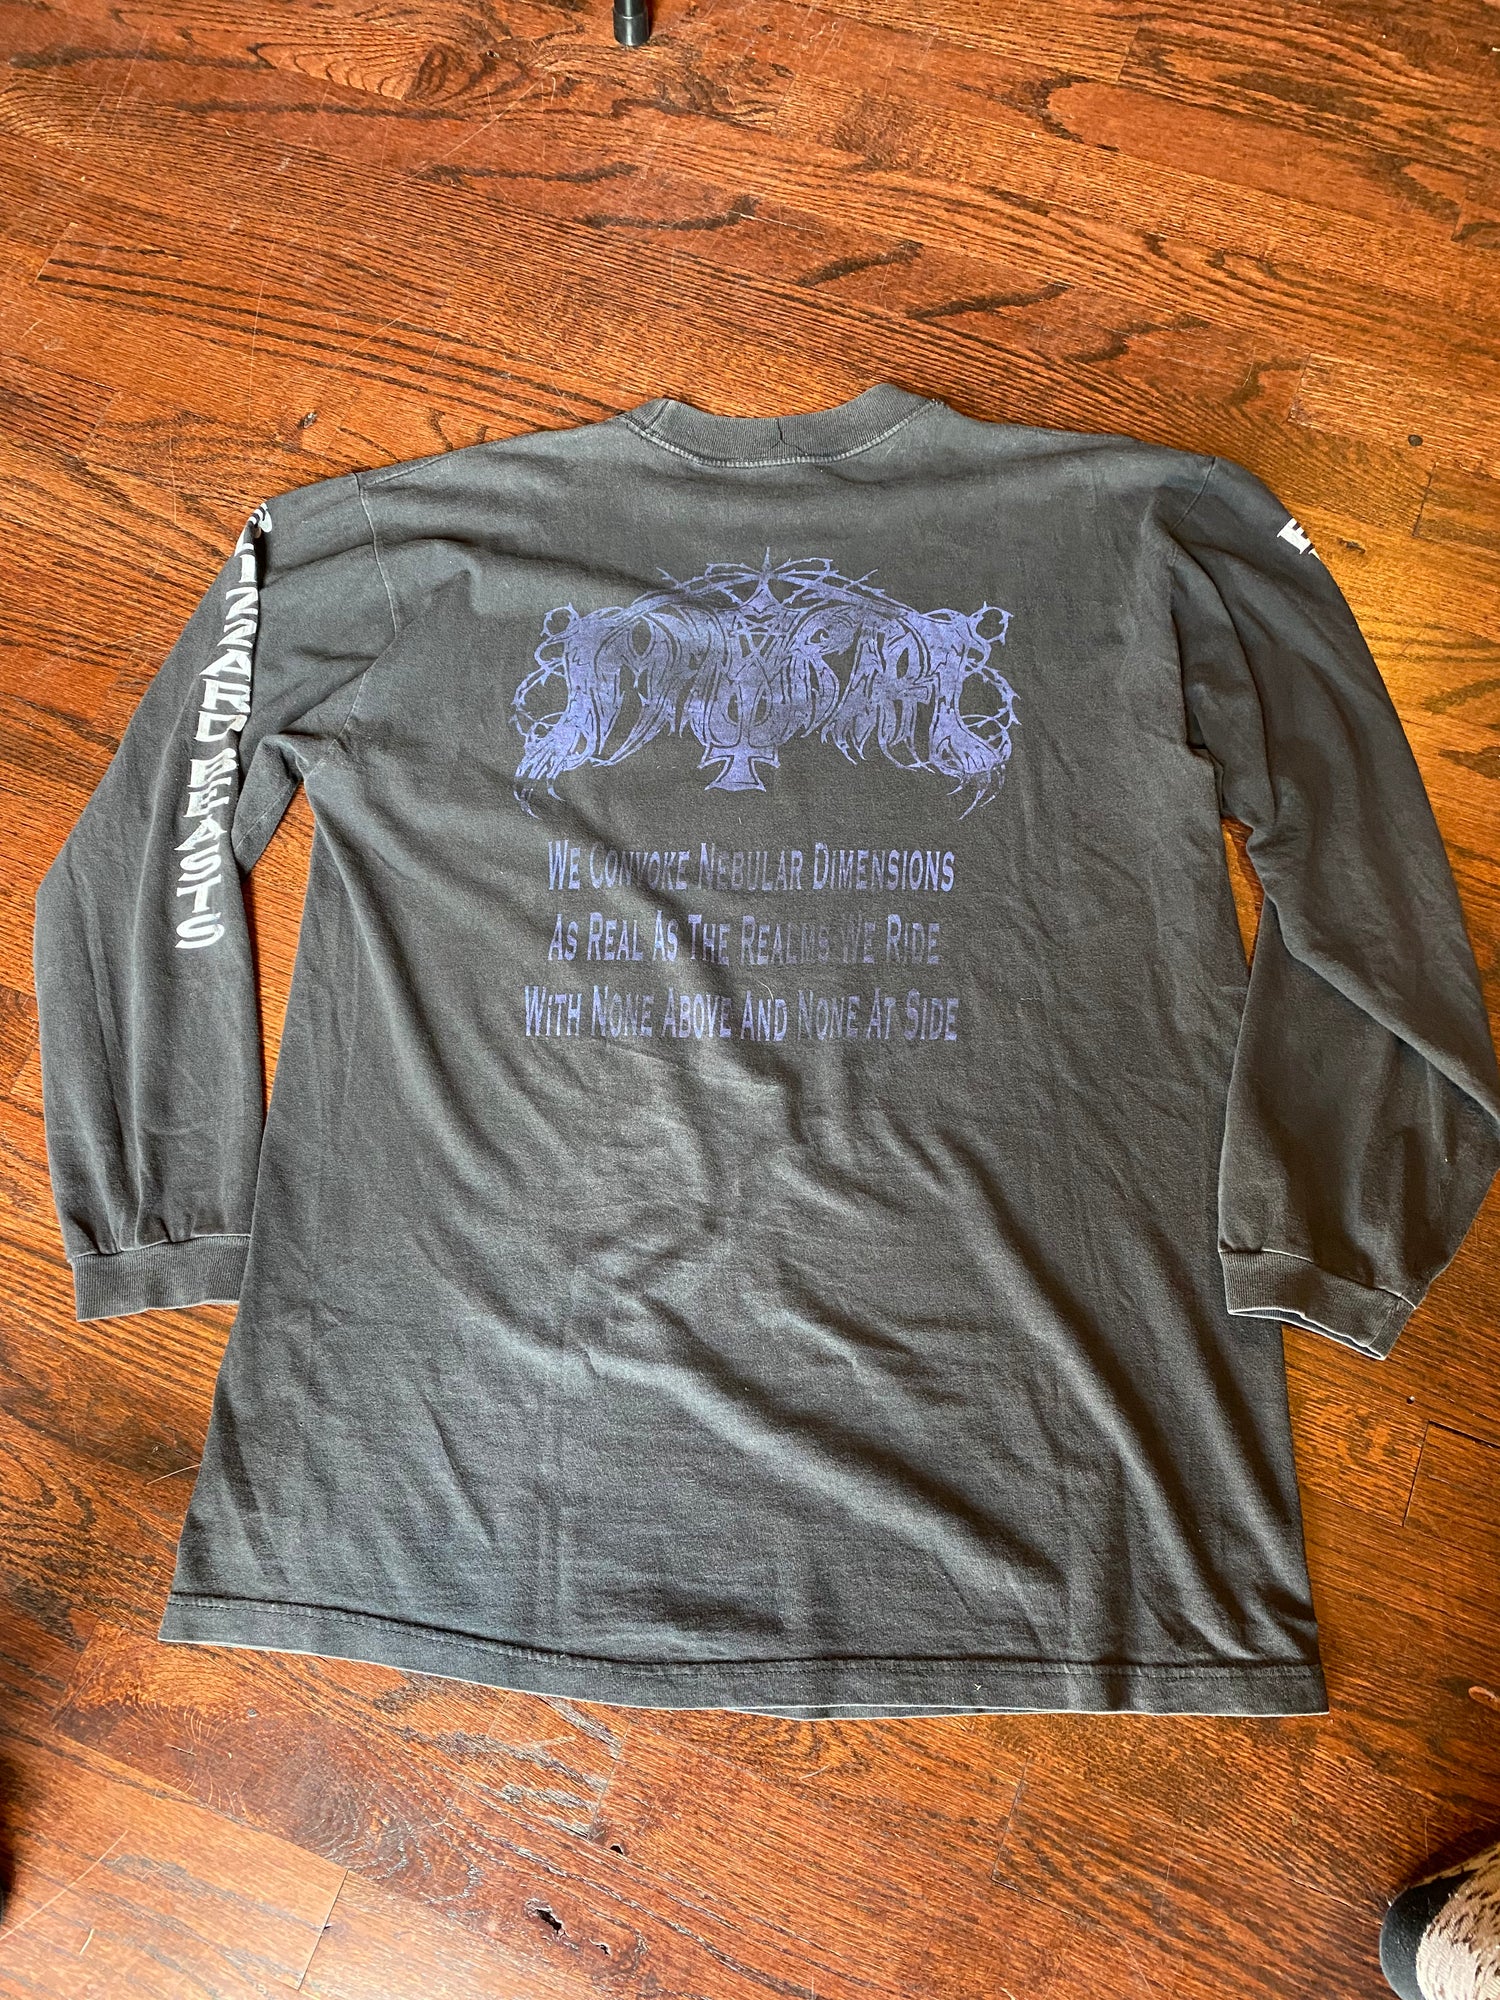 T-Shirt - Immortal - Blizzard Beasts